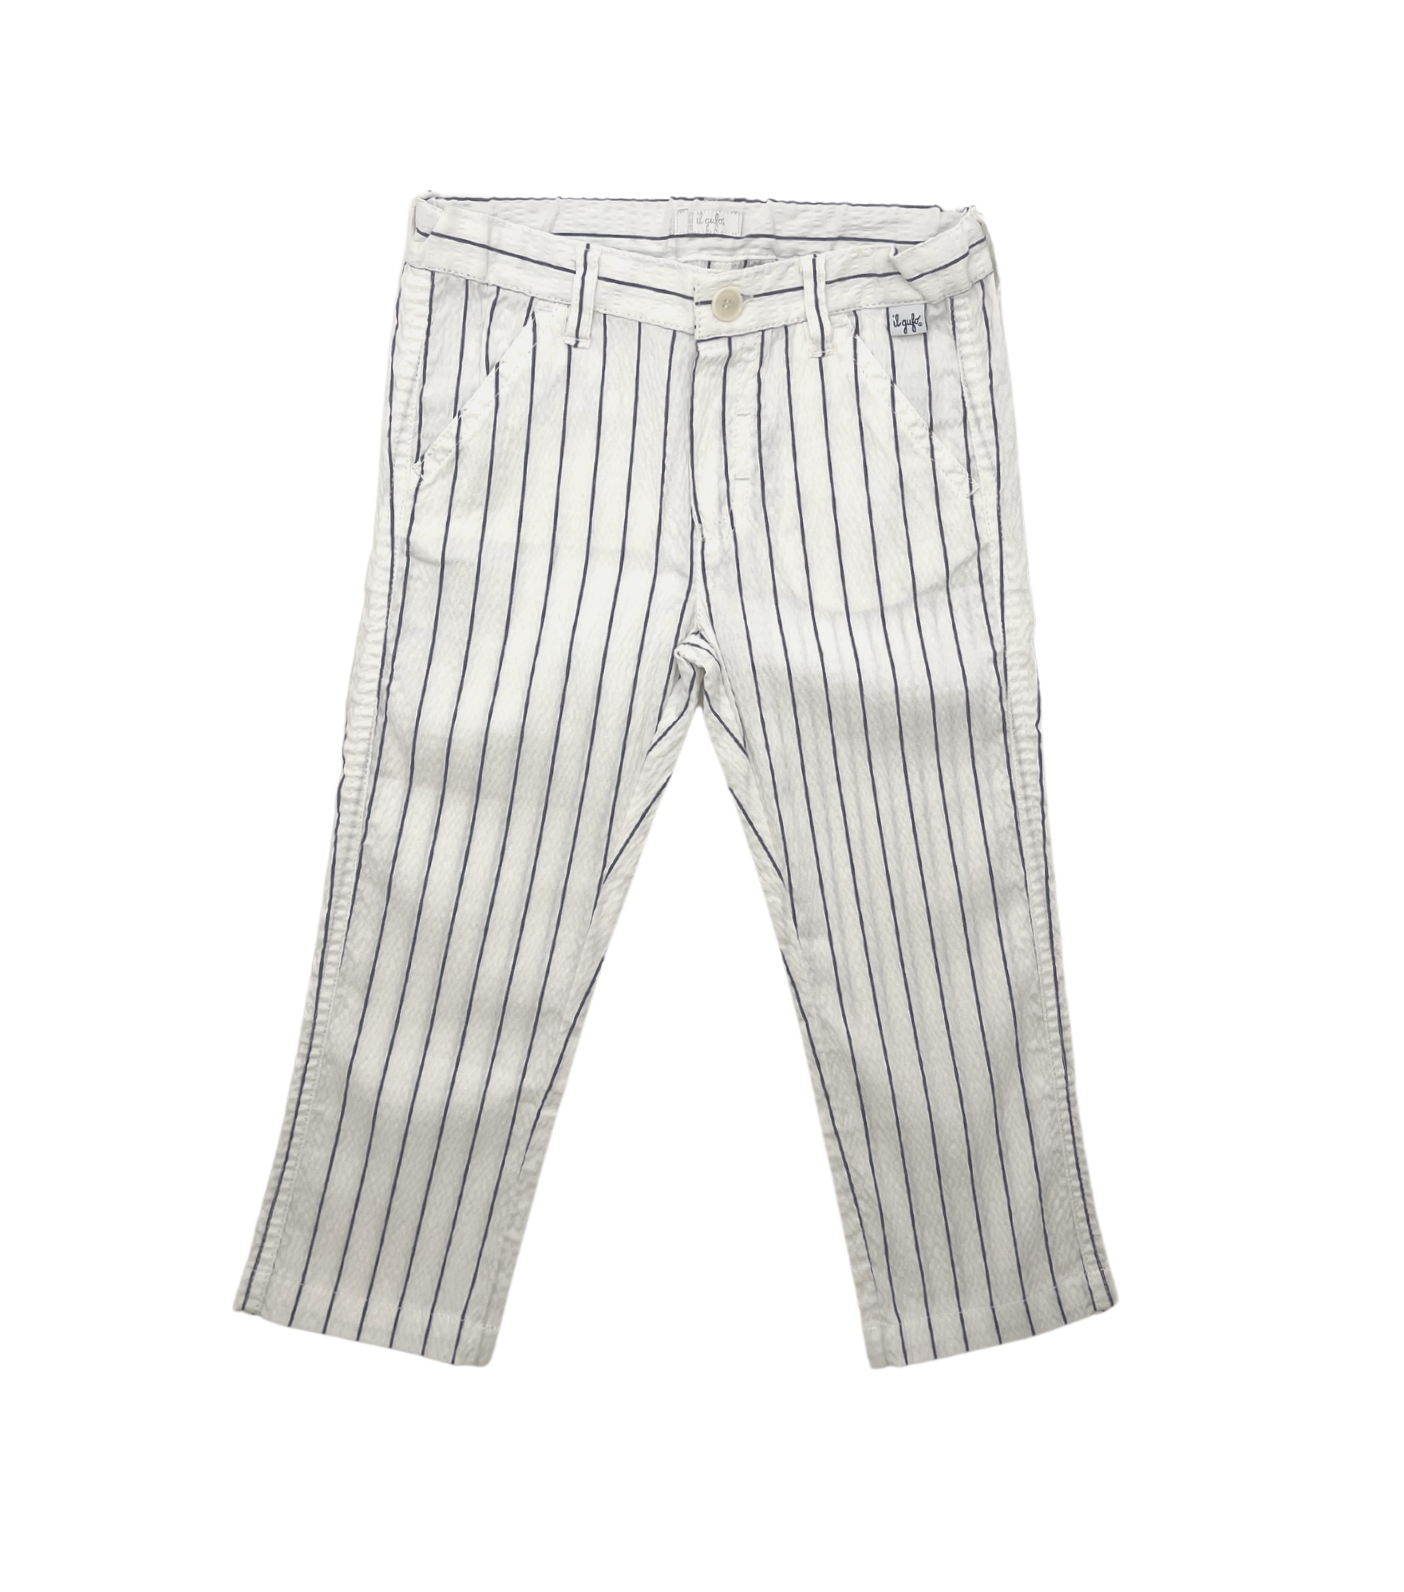 IL GUFO - Pantalon rayé blanc & bleu - 3 ans